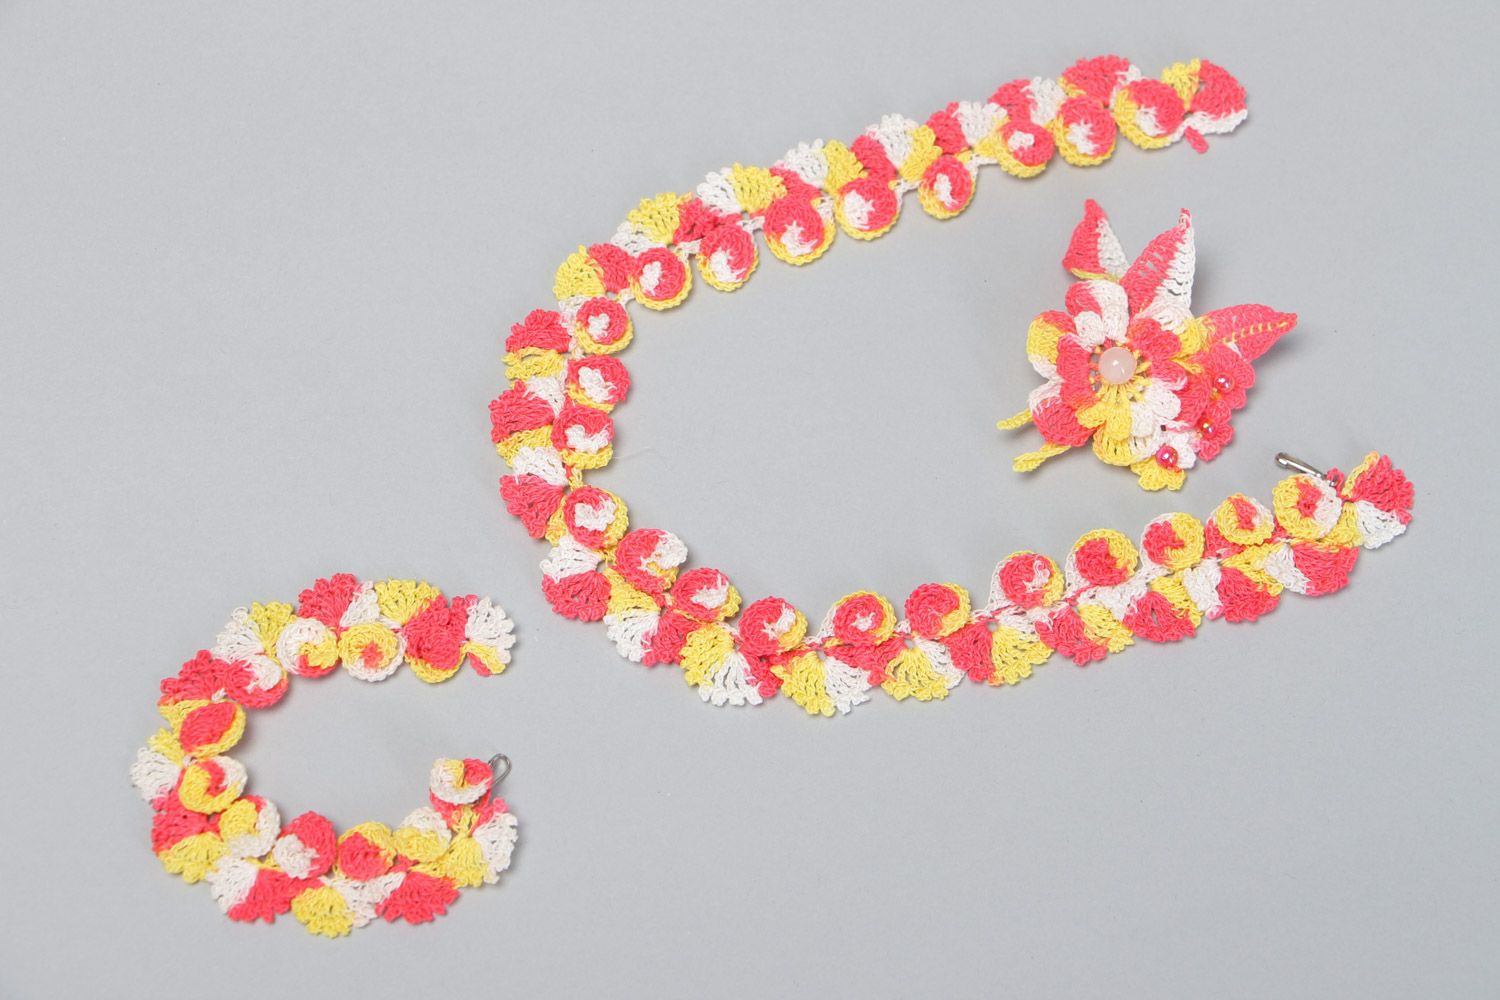 Strick Schmuckstücke gehäkelt Collier Brosche Armband mit Blumen für sommerlichen Look foto 2